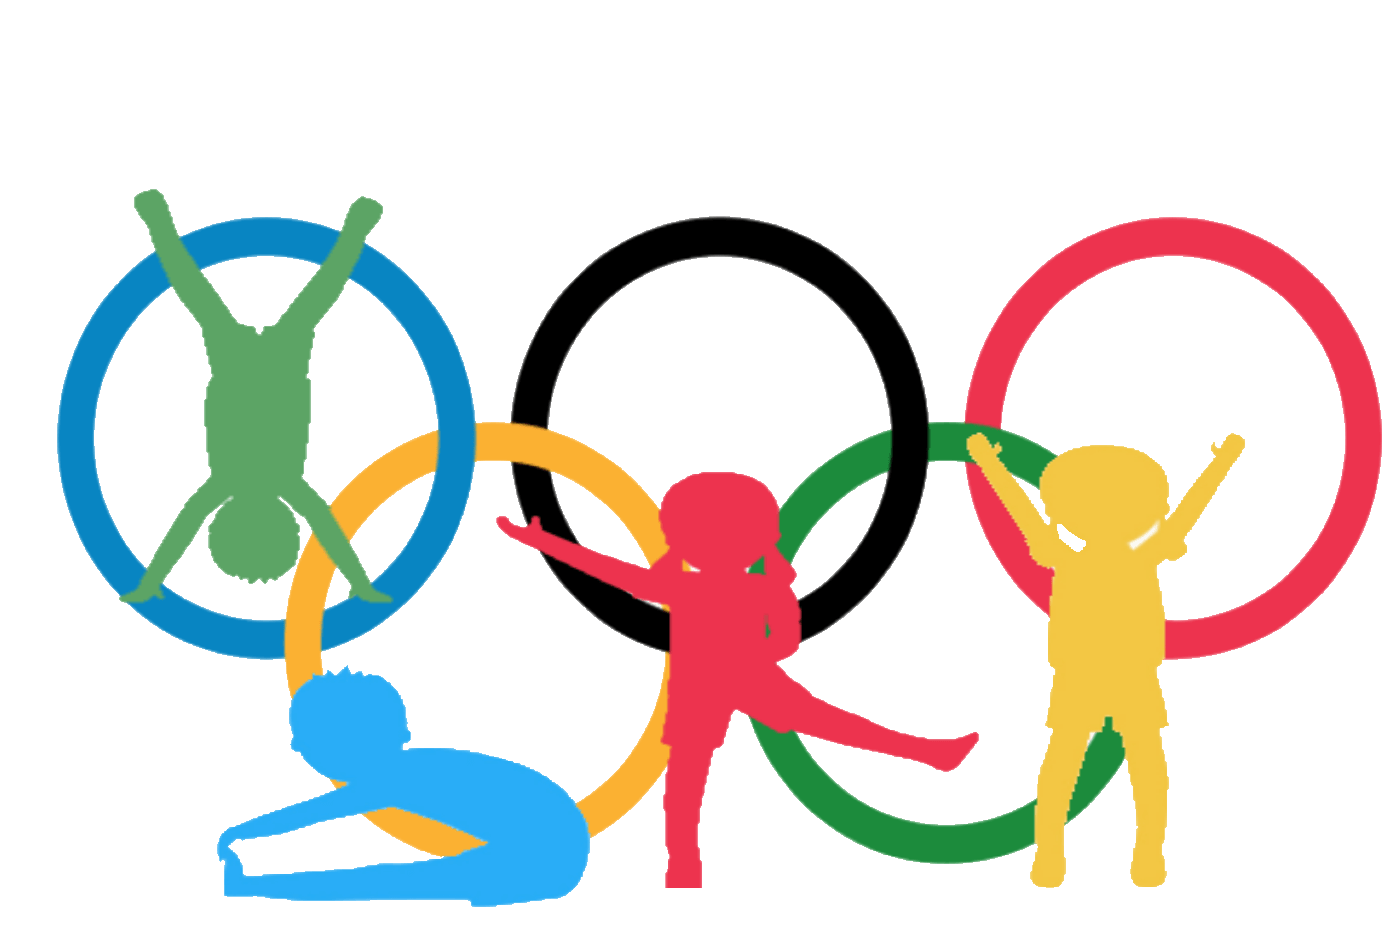 Olympic Rings - Associação Portuguesa De Desportos Transparent PNG -  1750x1410 - Free Download on NicePNG